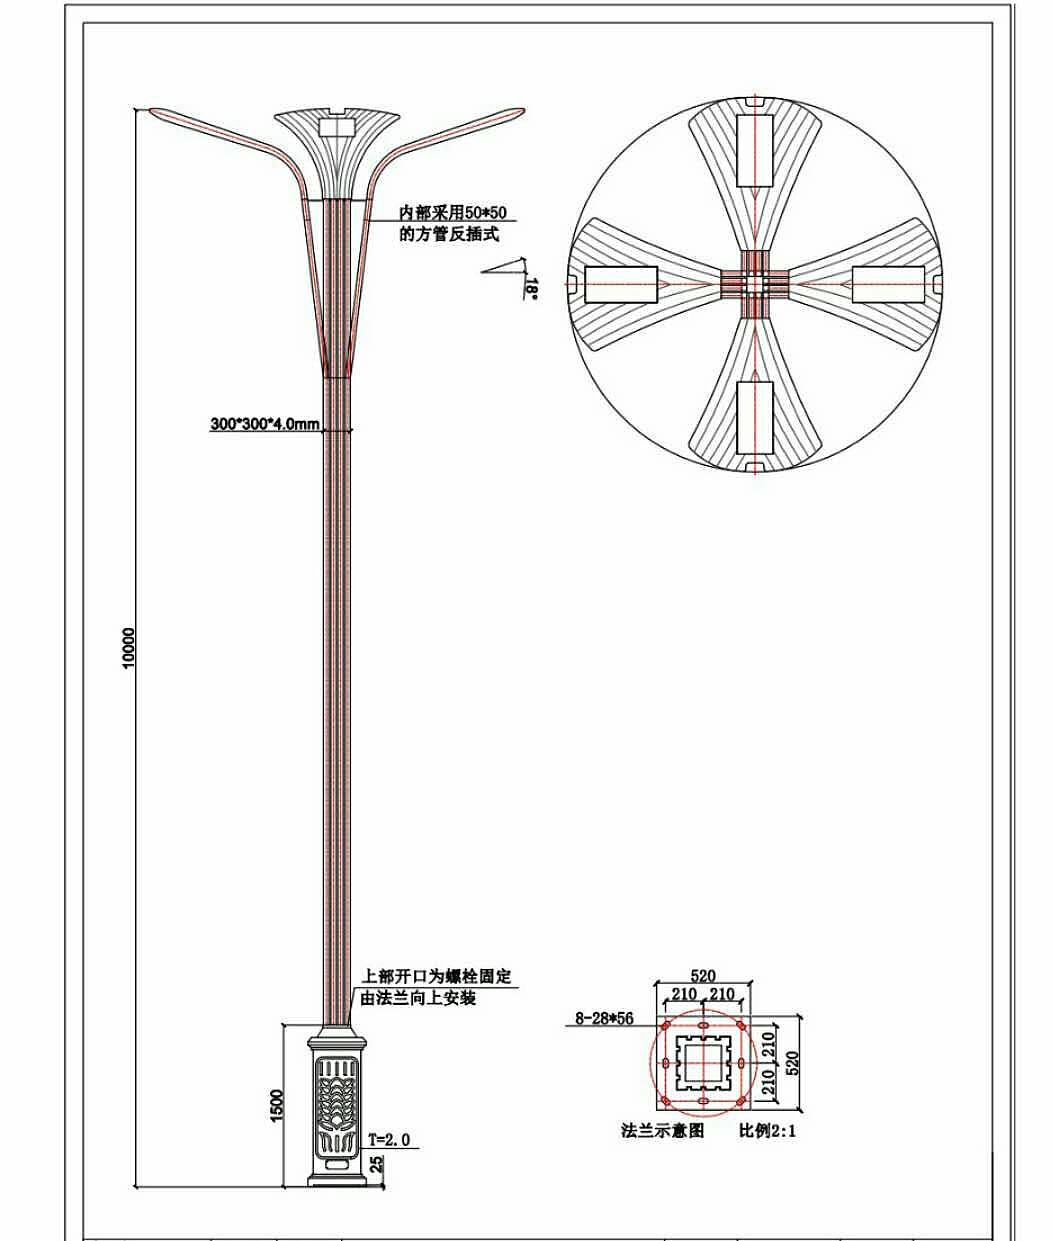 市电LED路灯 - 市电LED路灯系列-产品中心 - 扬州市宝辉交通照明有限公司